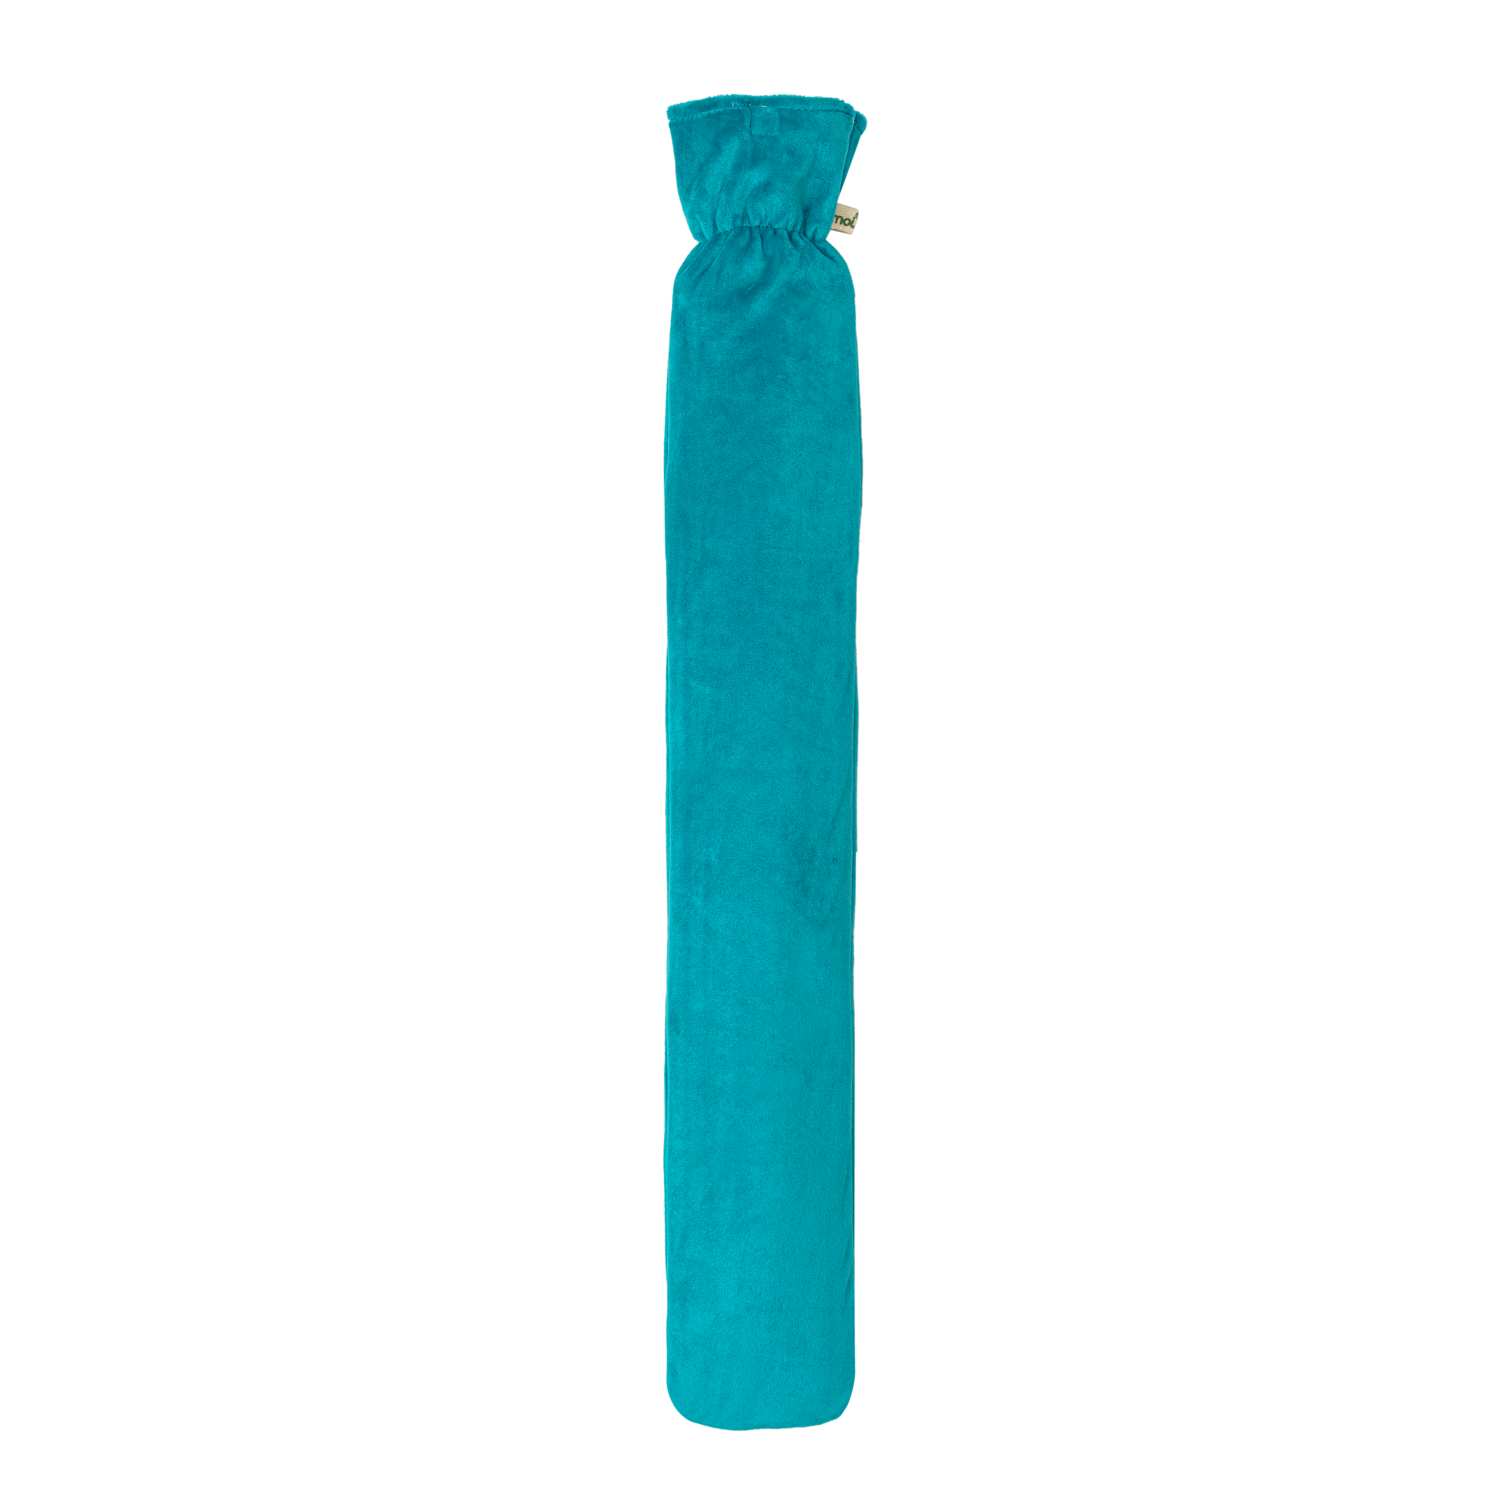 Öko Naturgummi Schlauchwärmflasche mit Fleece Bezug